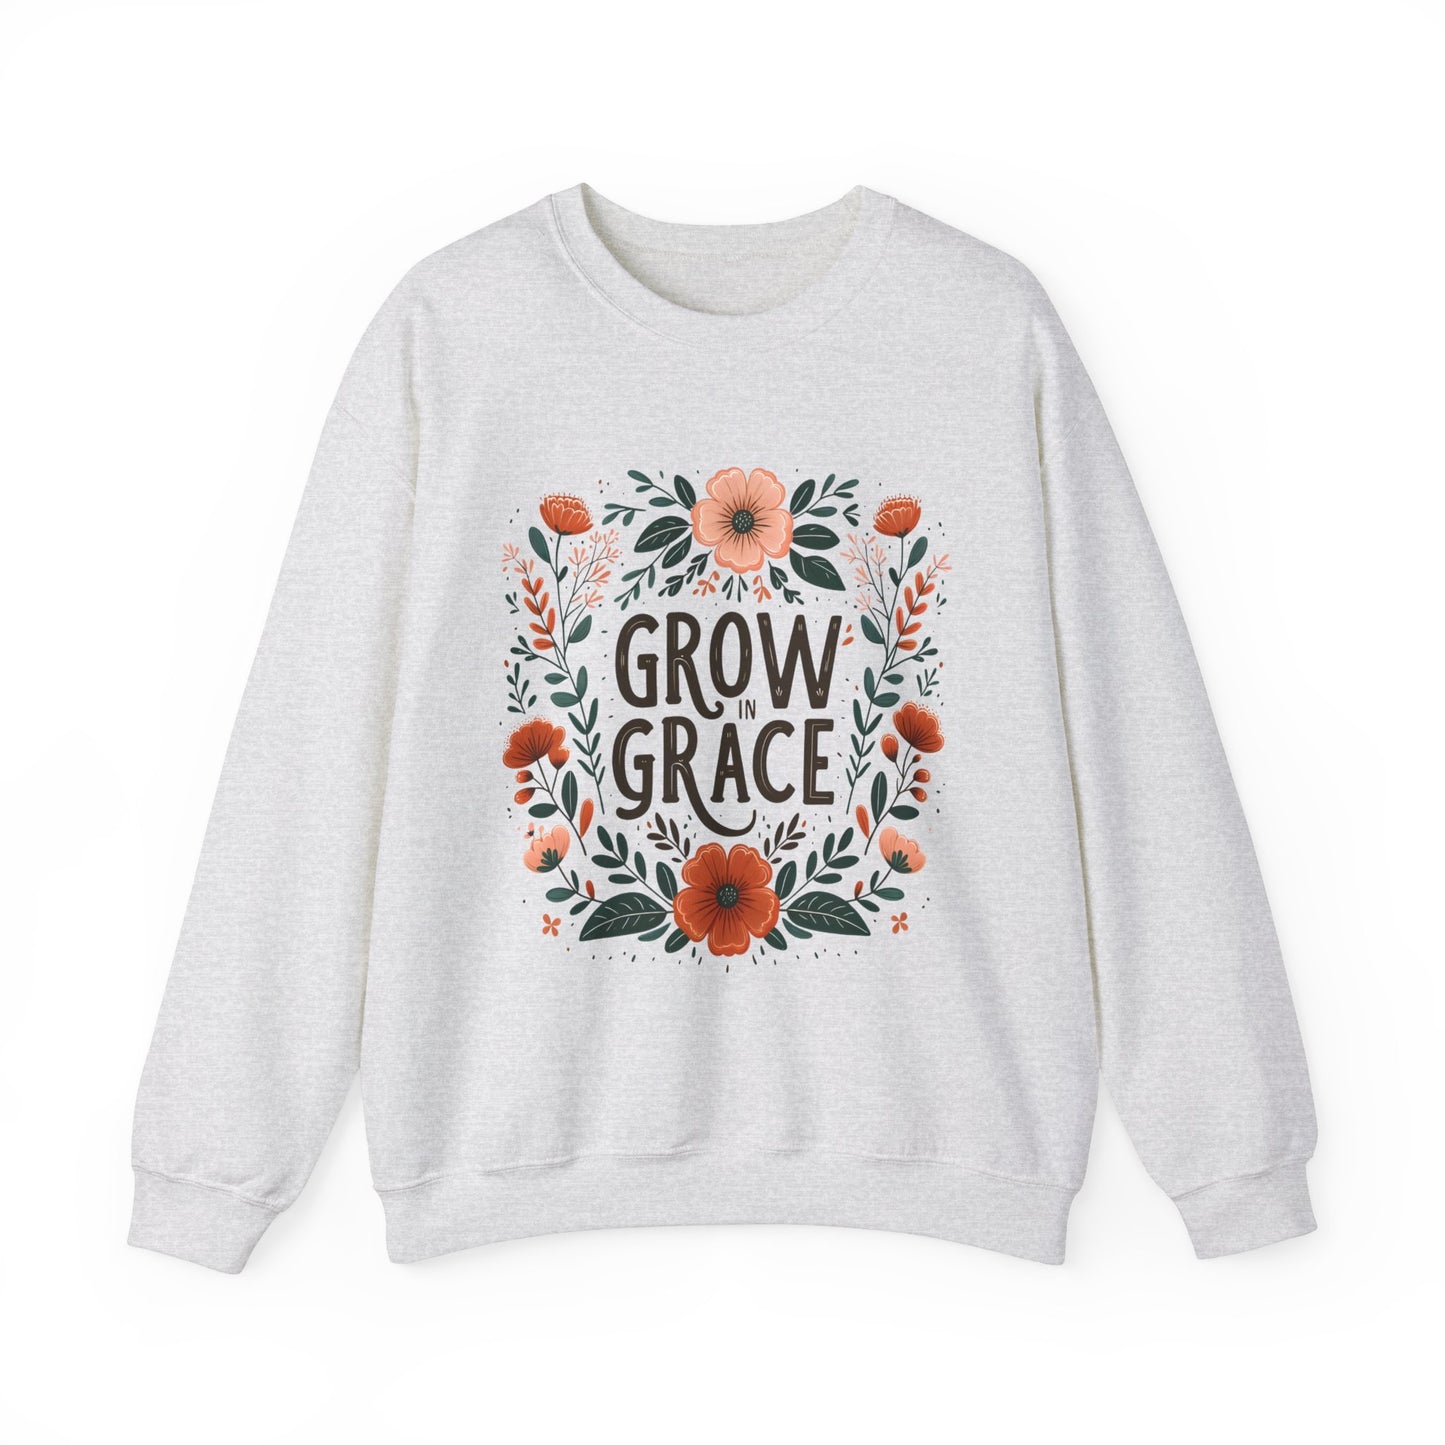 Grow in Grace Women's Easter Sweatshirt